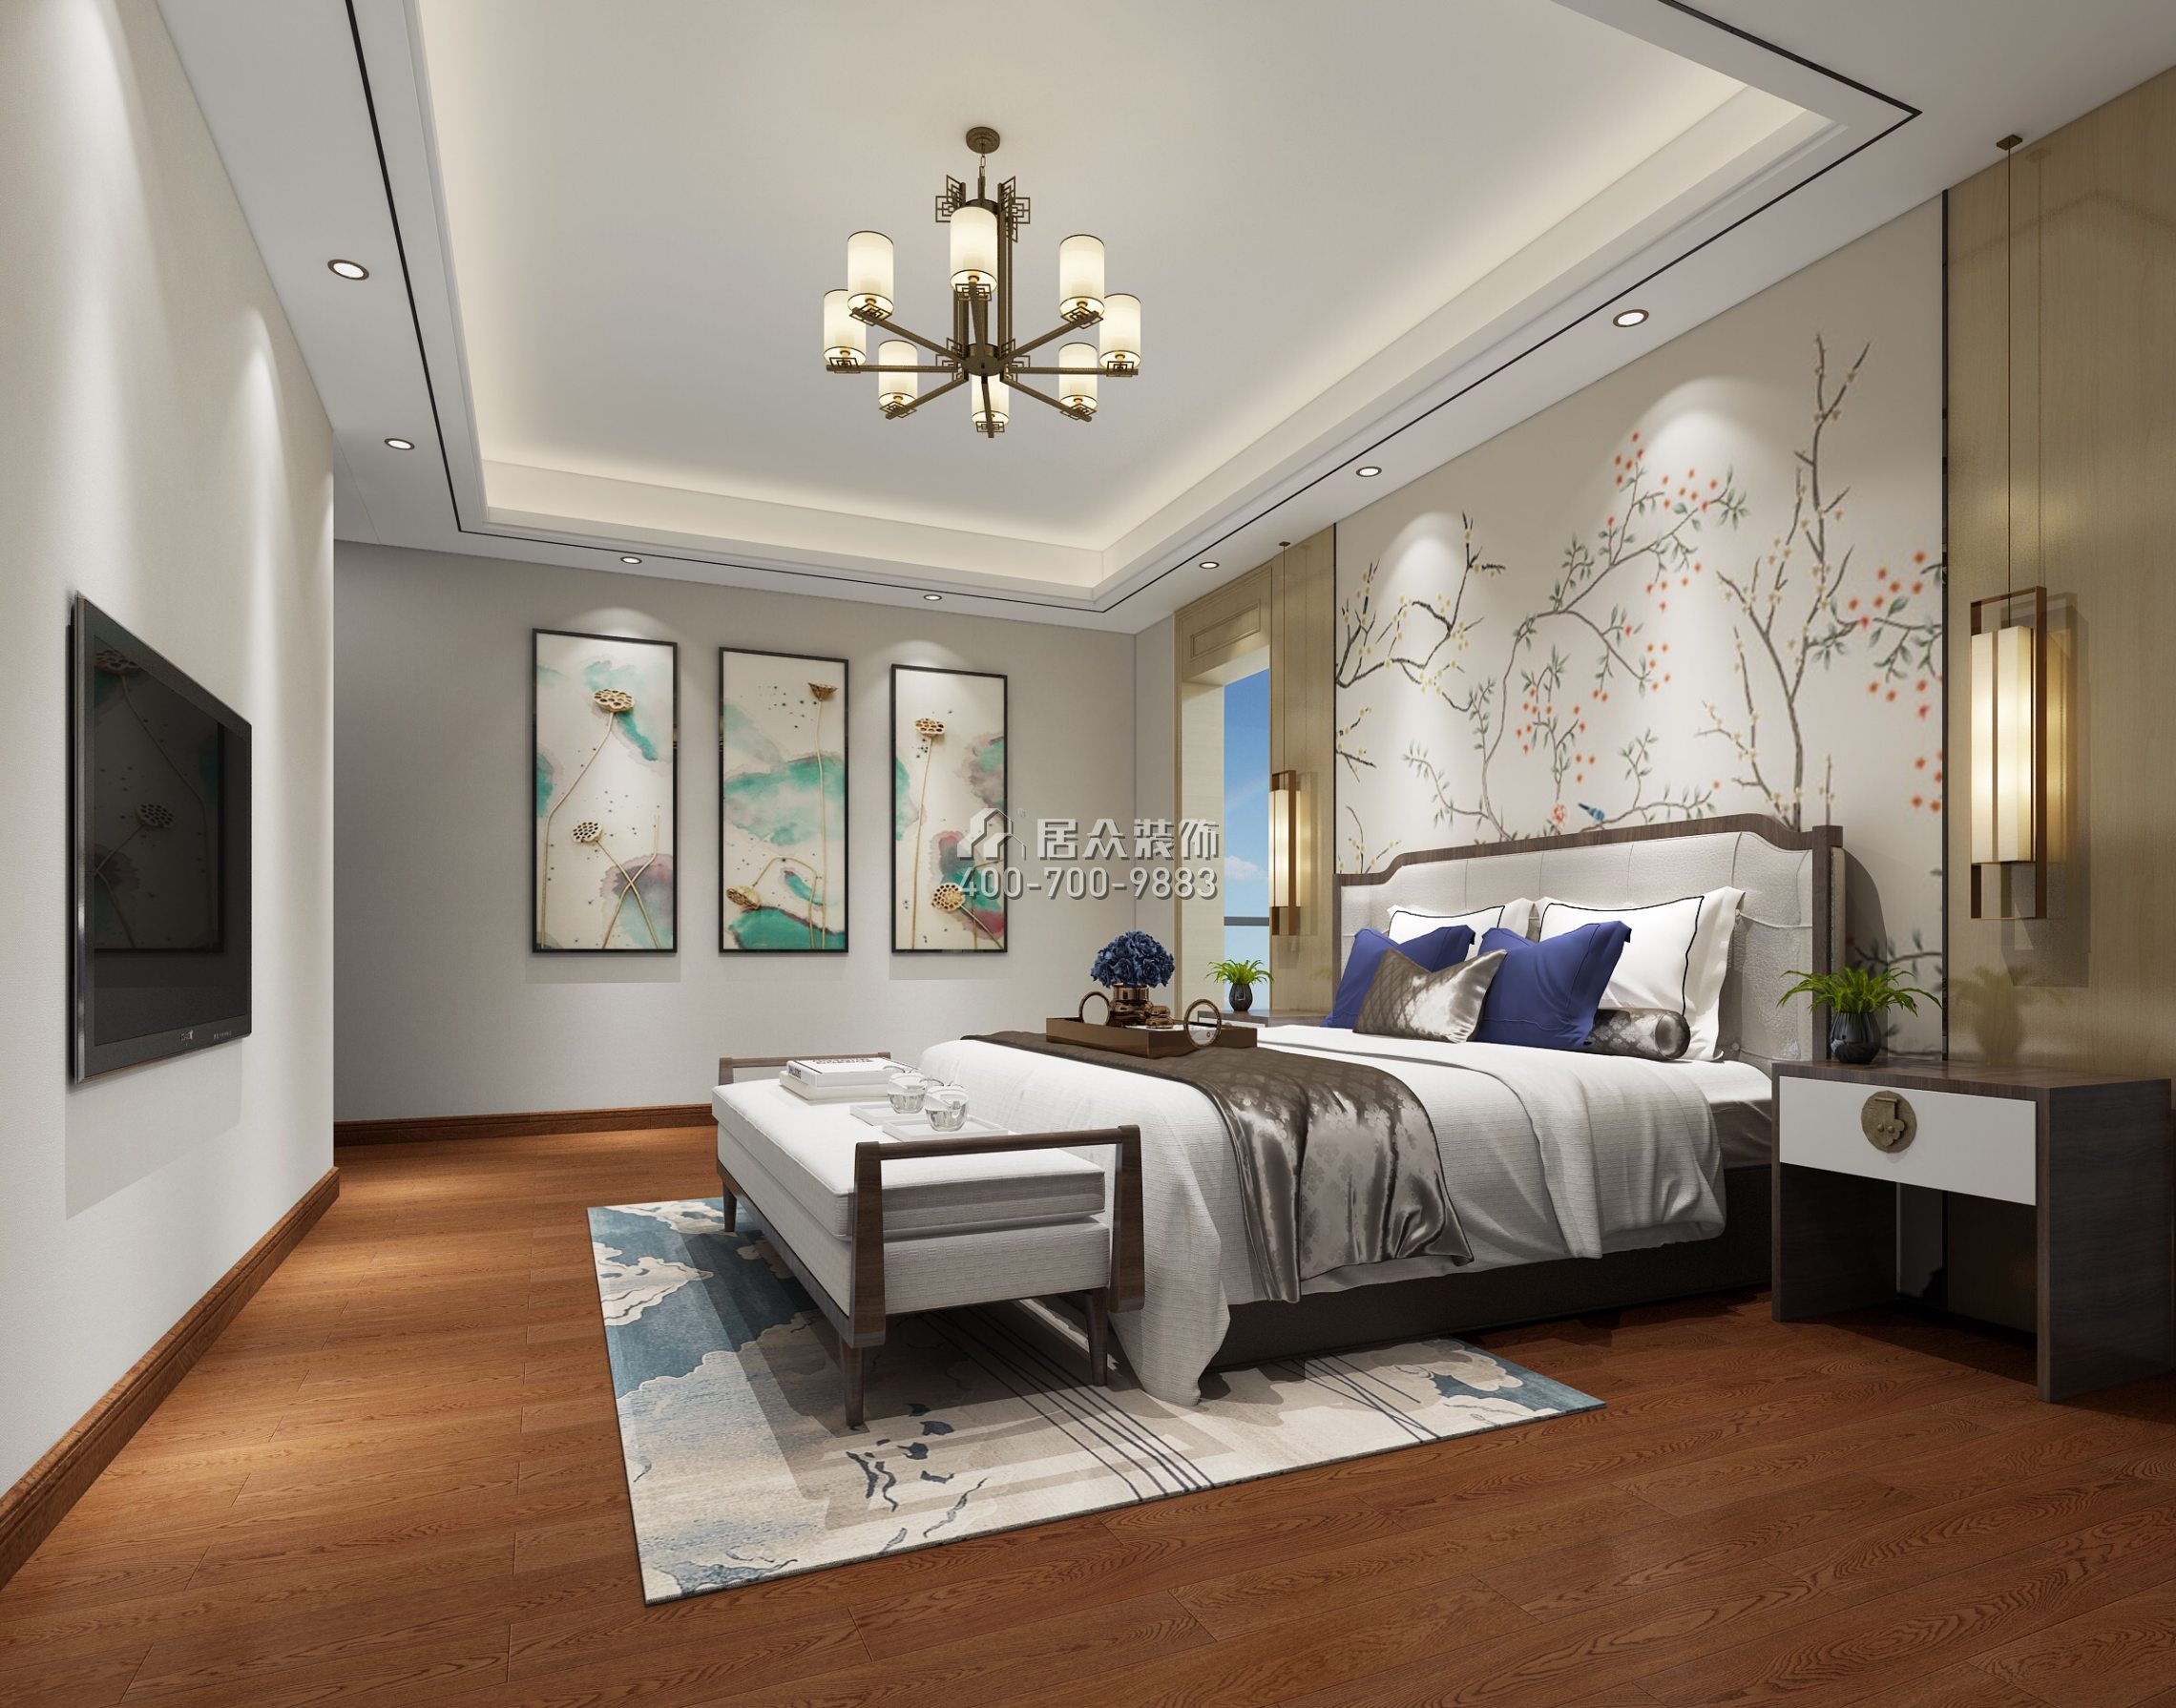 万科双月湾二期352平方米中式风格别墅户型卧室装修效果图